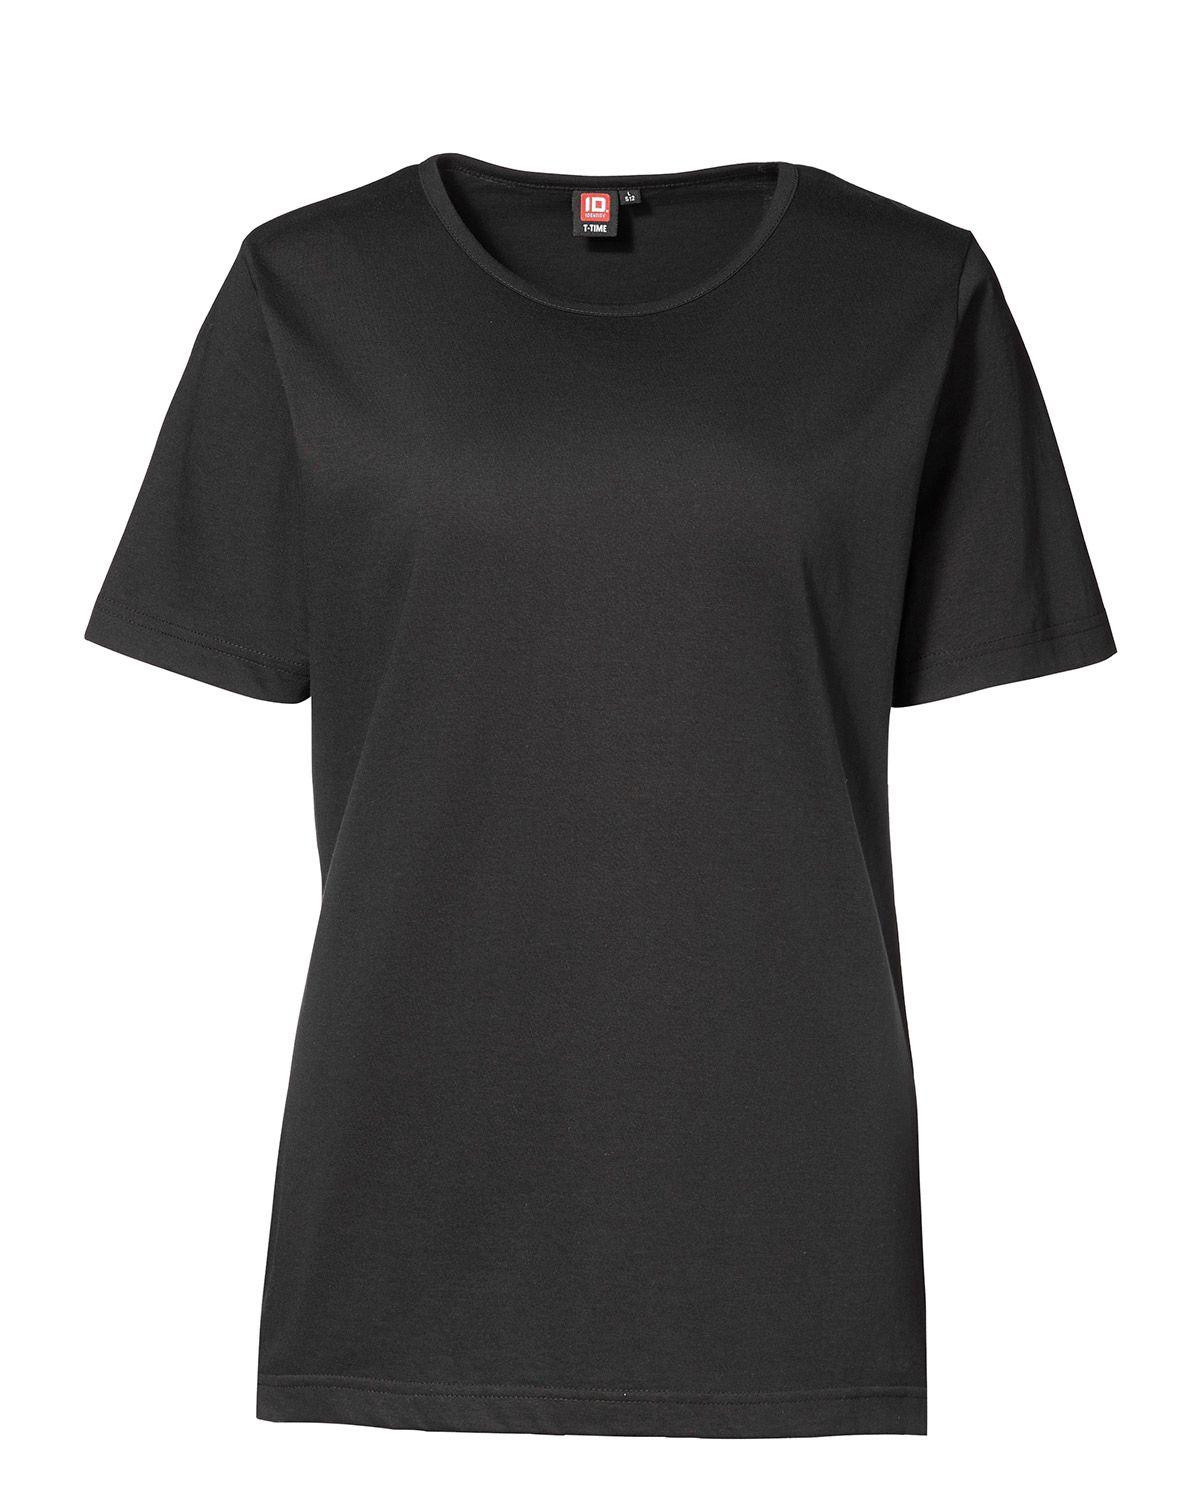 ID T-TIME T-shirt til Kvinder (Sort, S)